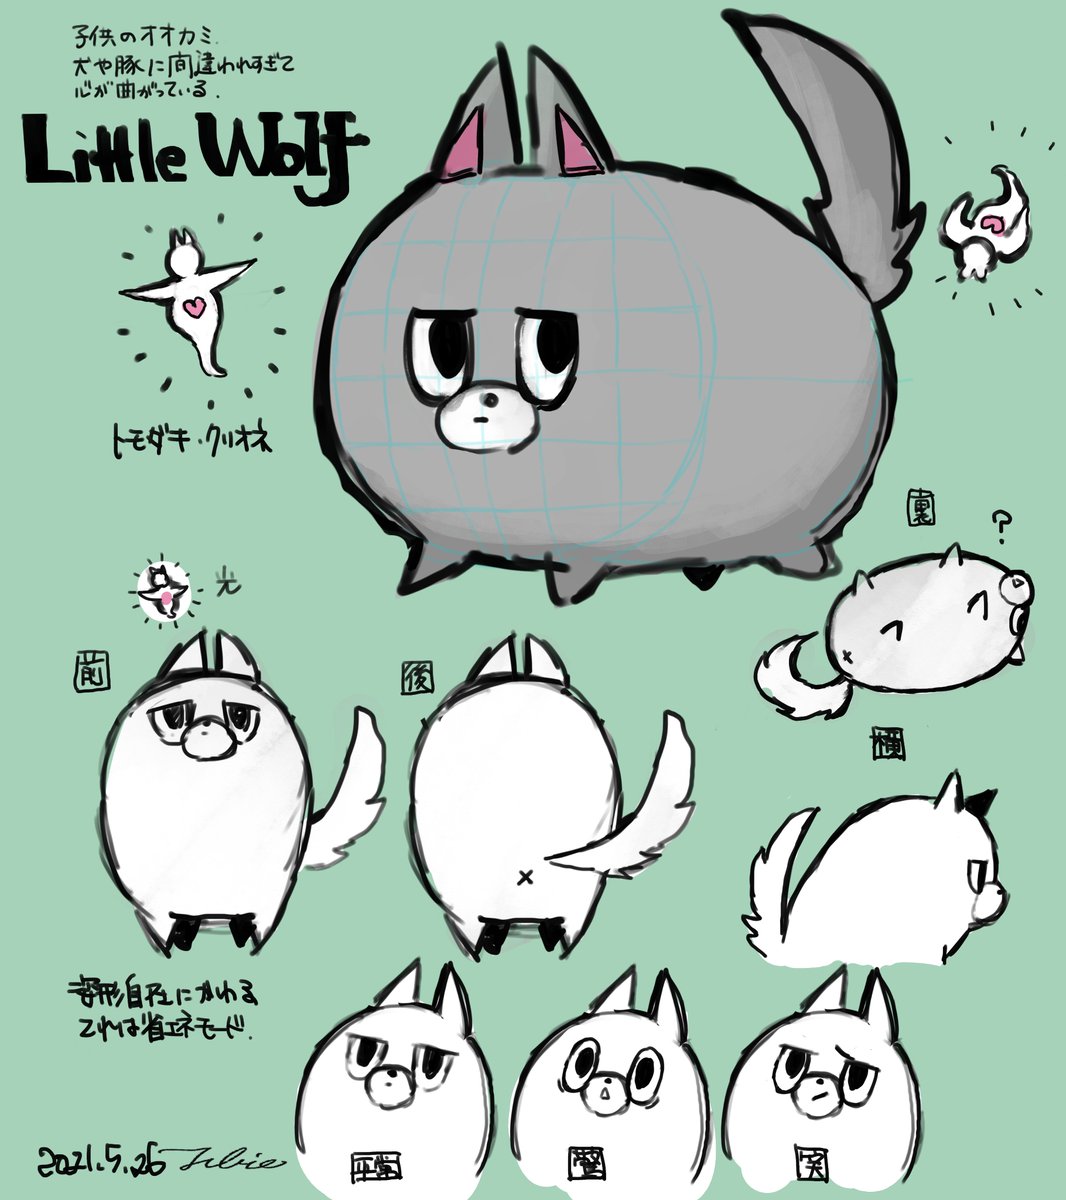 #characterdesign #conceptart
Little wolf. 